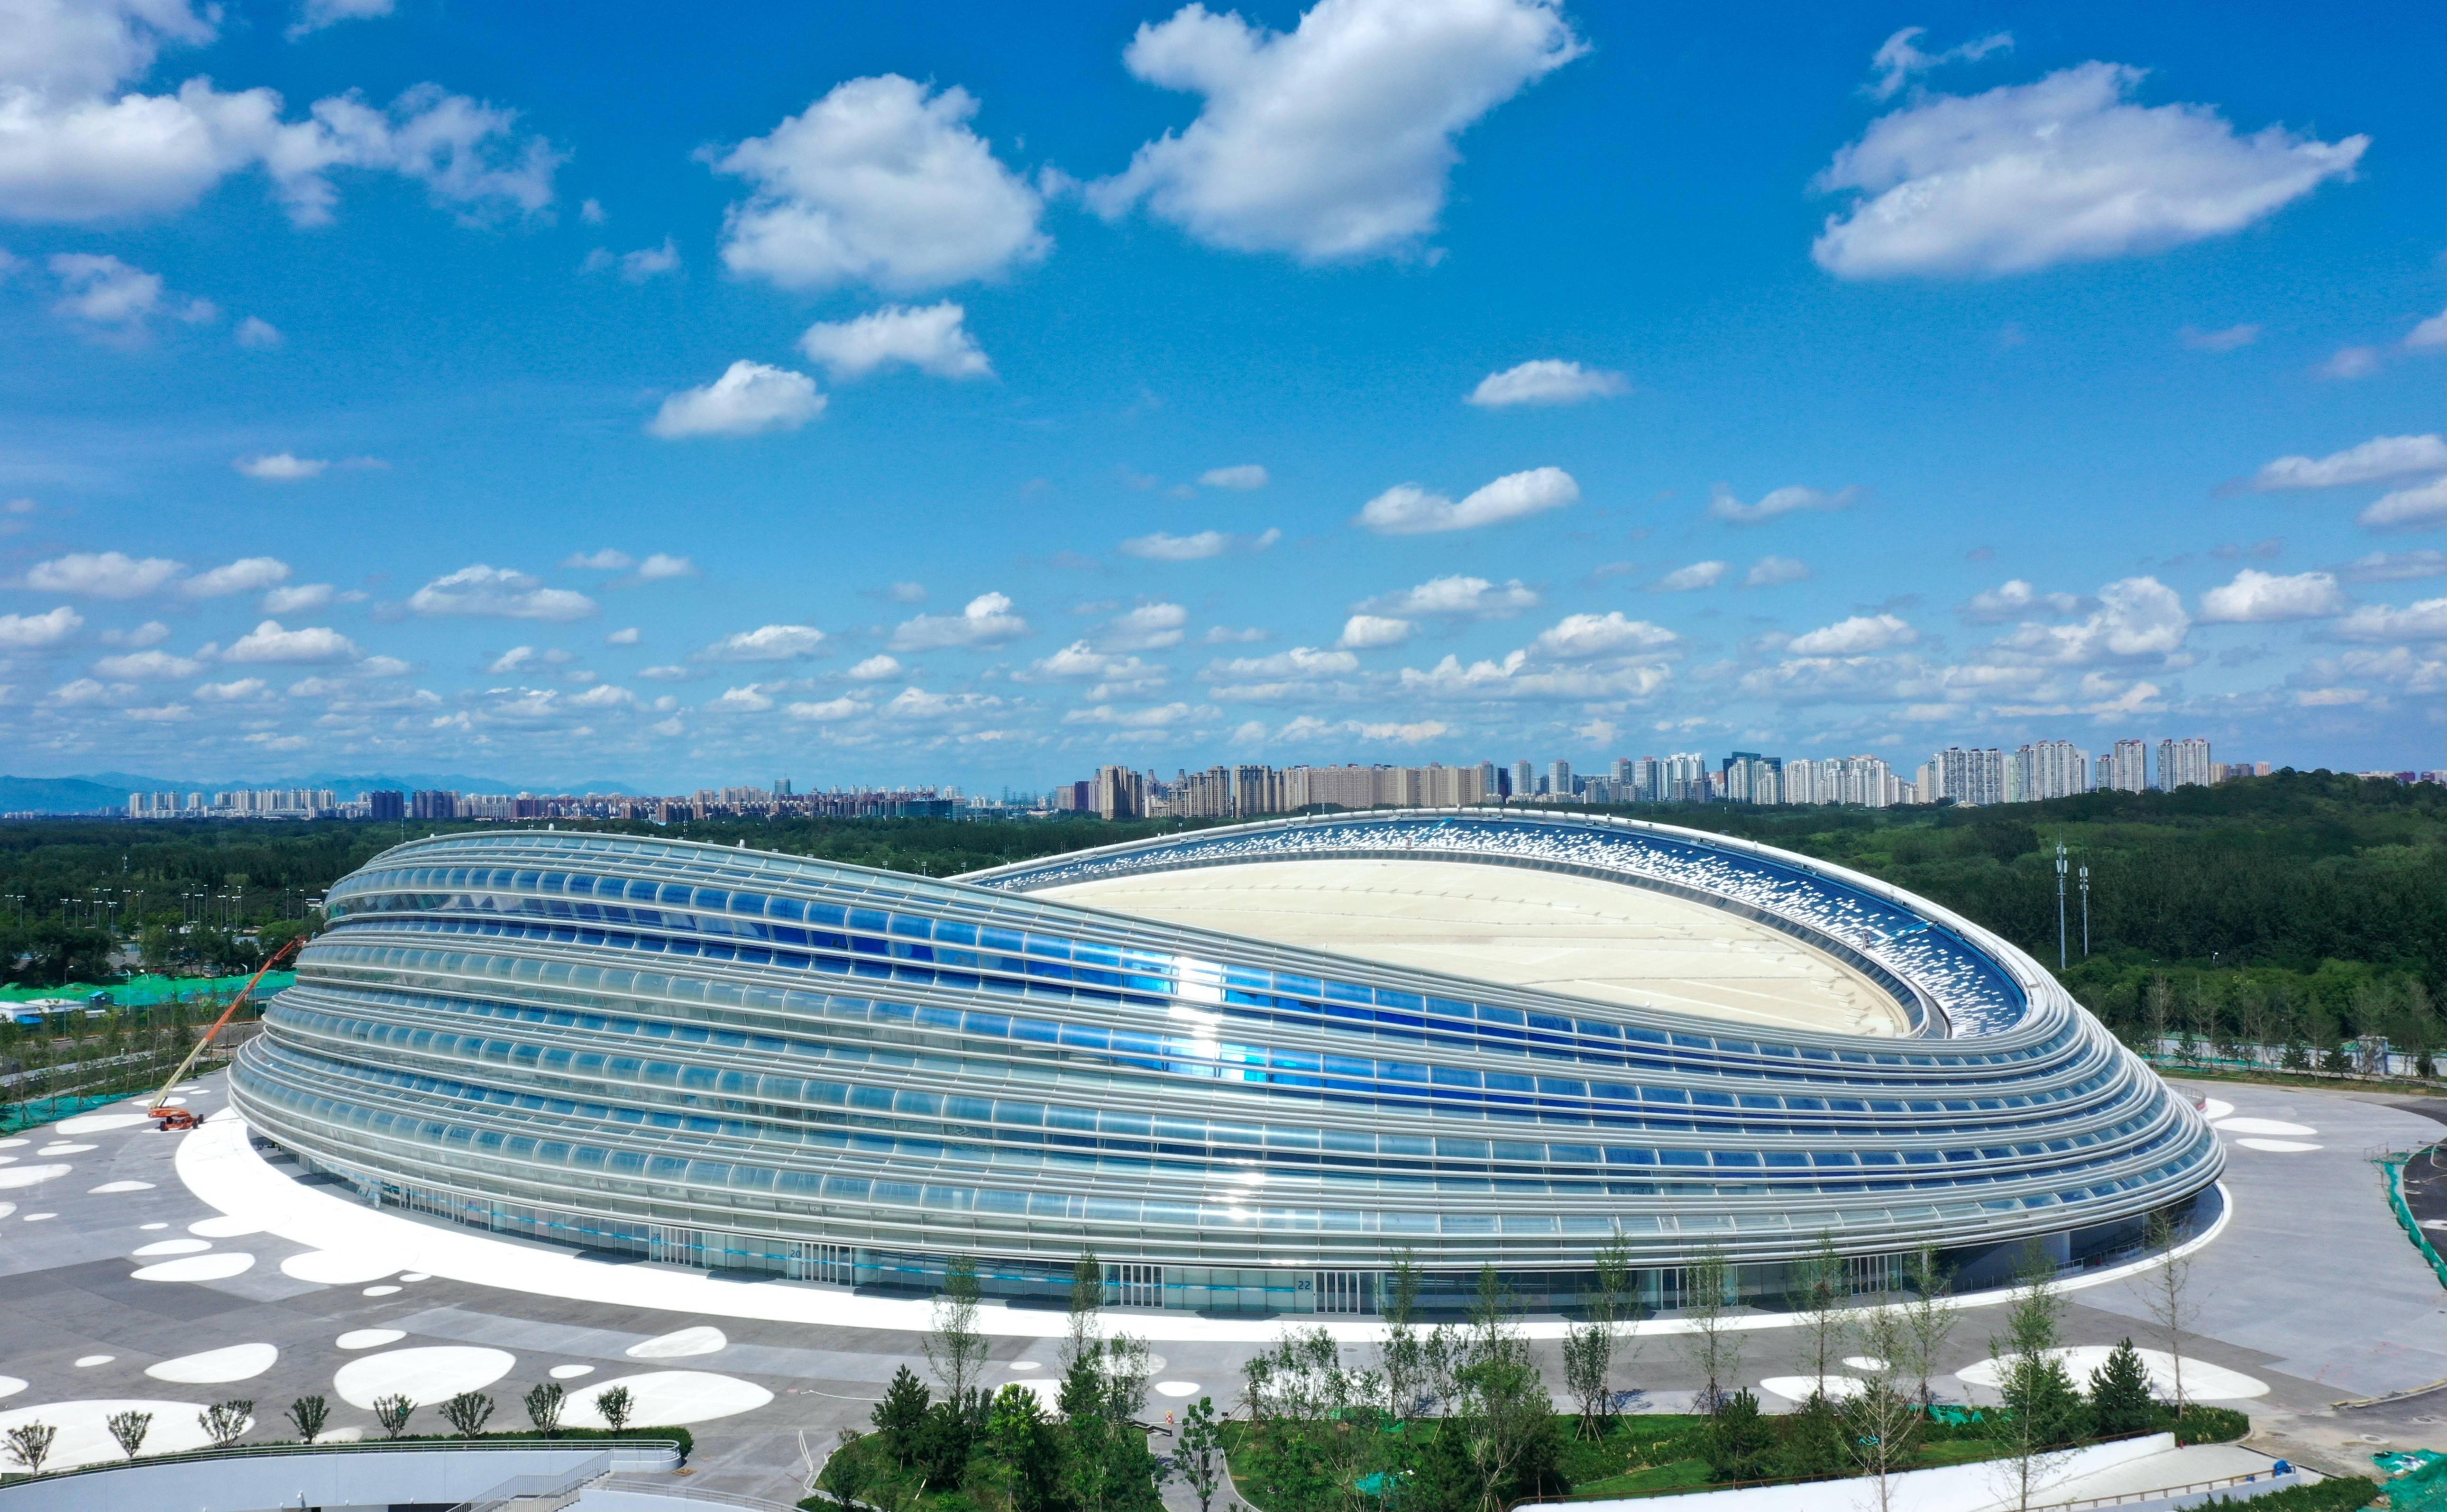 国家体育场"鸟巢"改造工程完工 北京国资公司打造"双奥之城"新地标